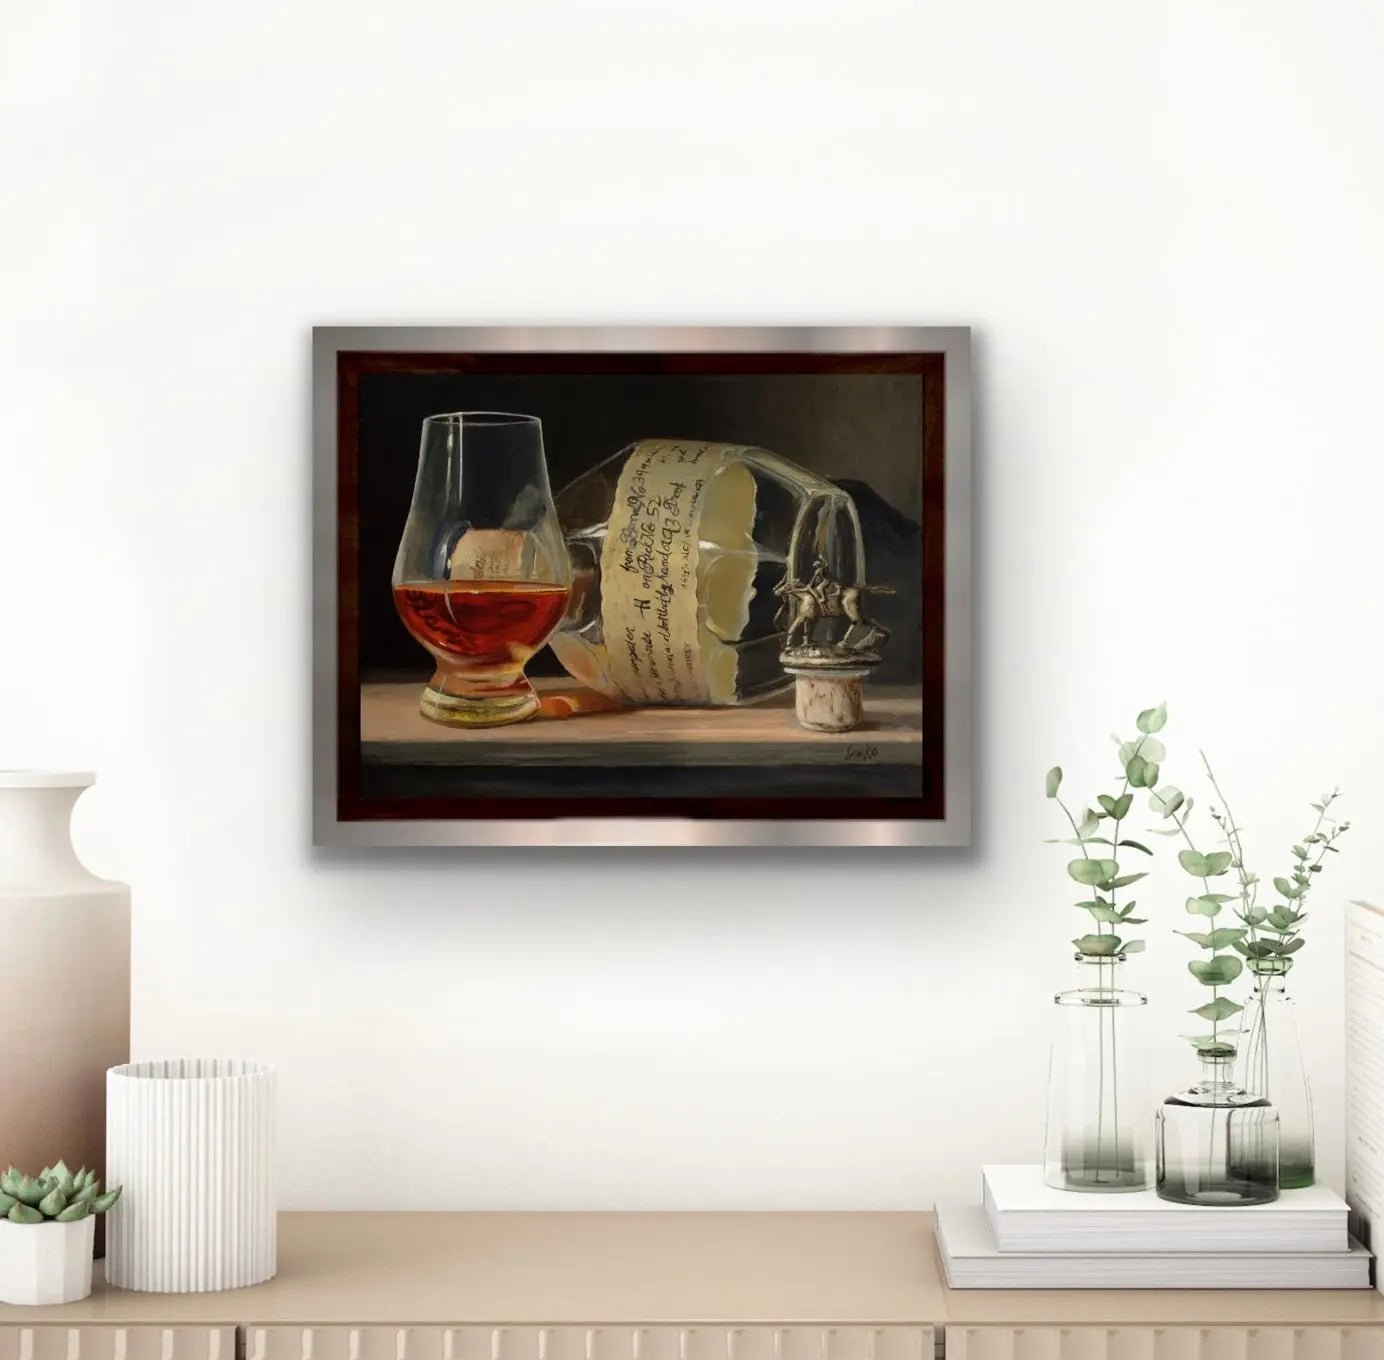 Framed In situ Oil painting of Blanton's Bourbon - man down!